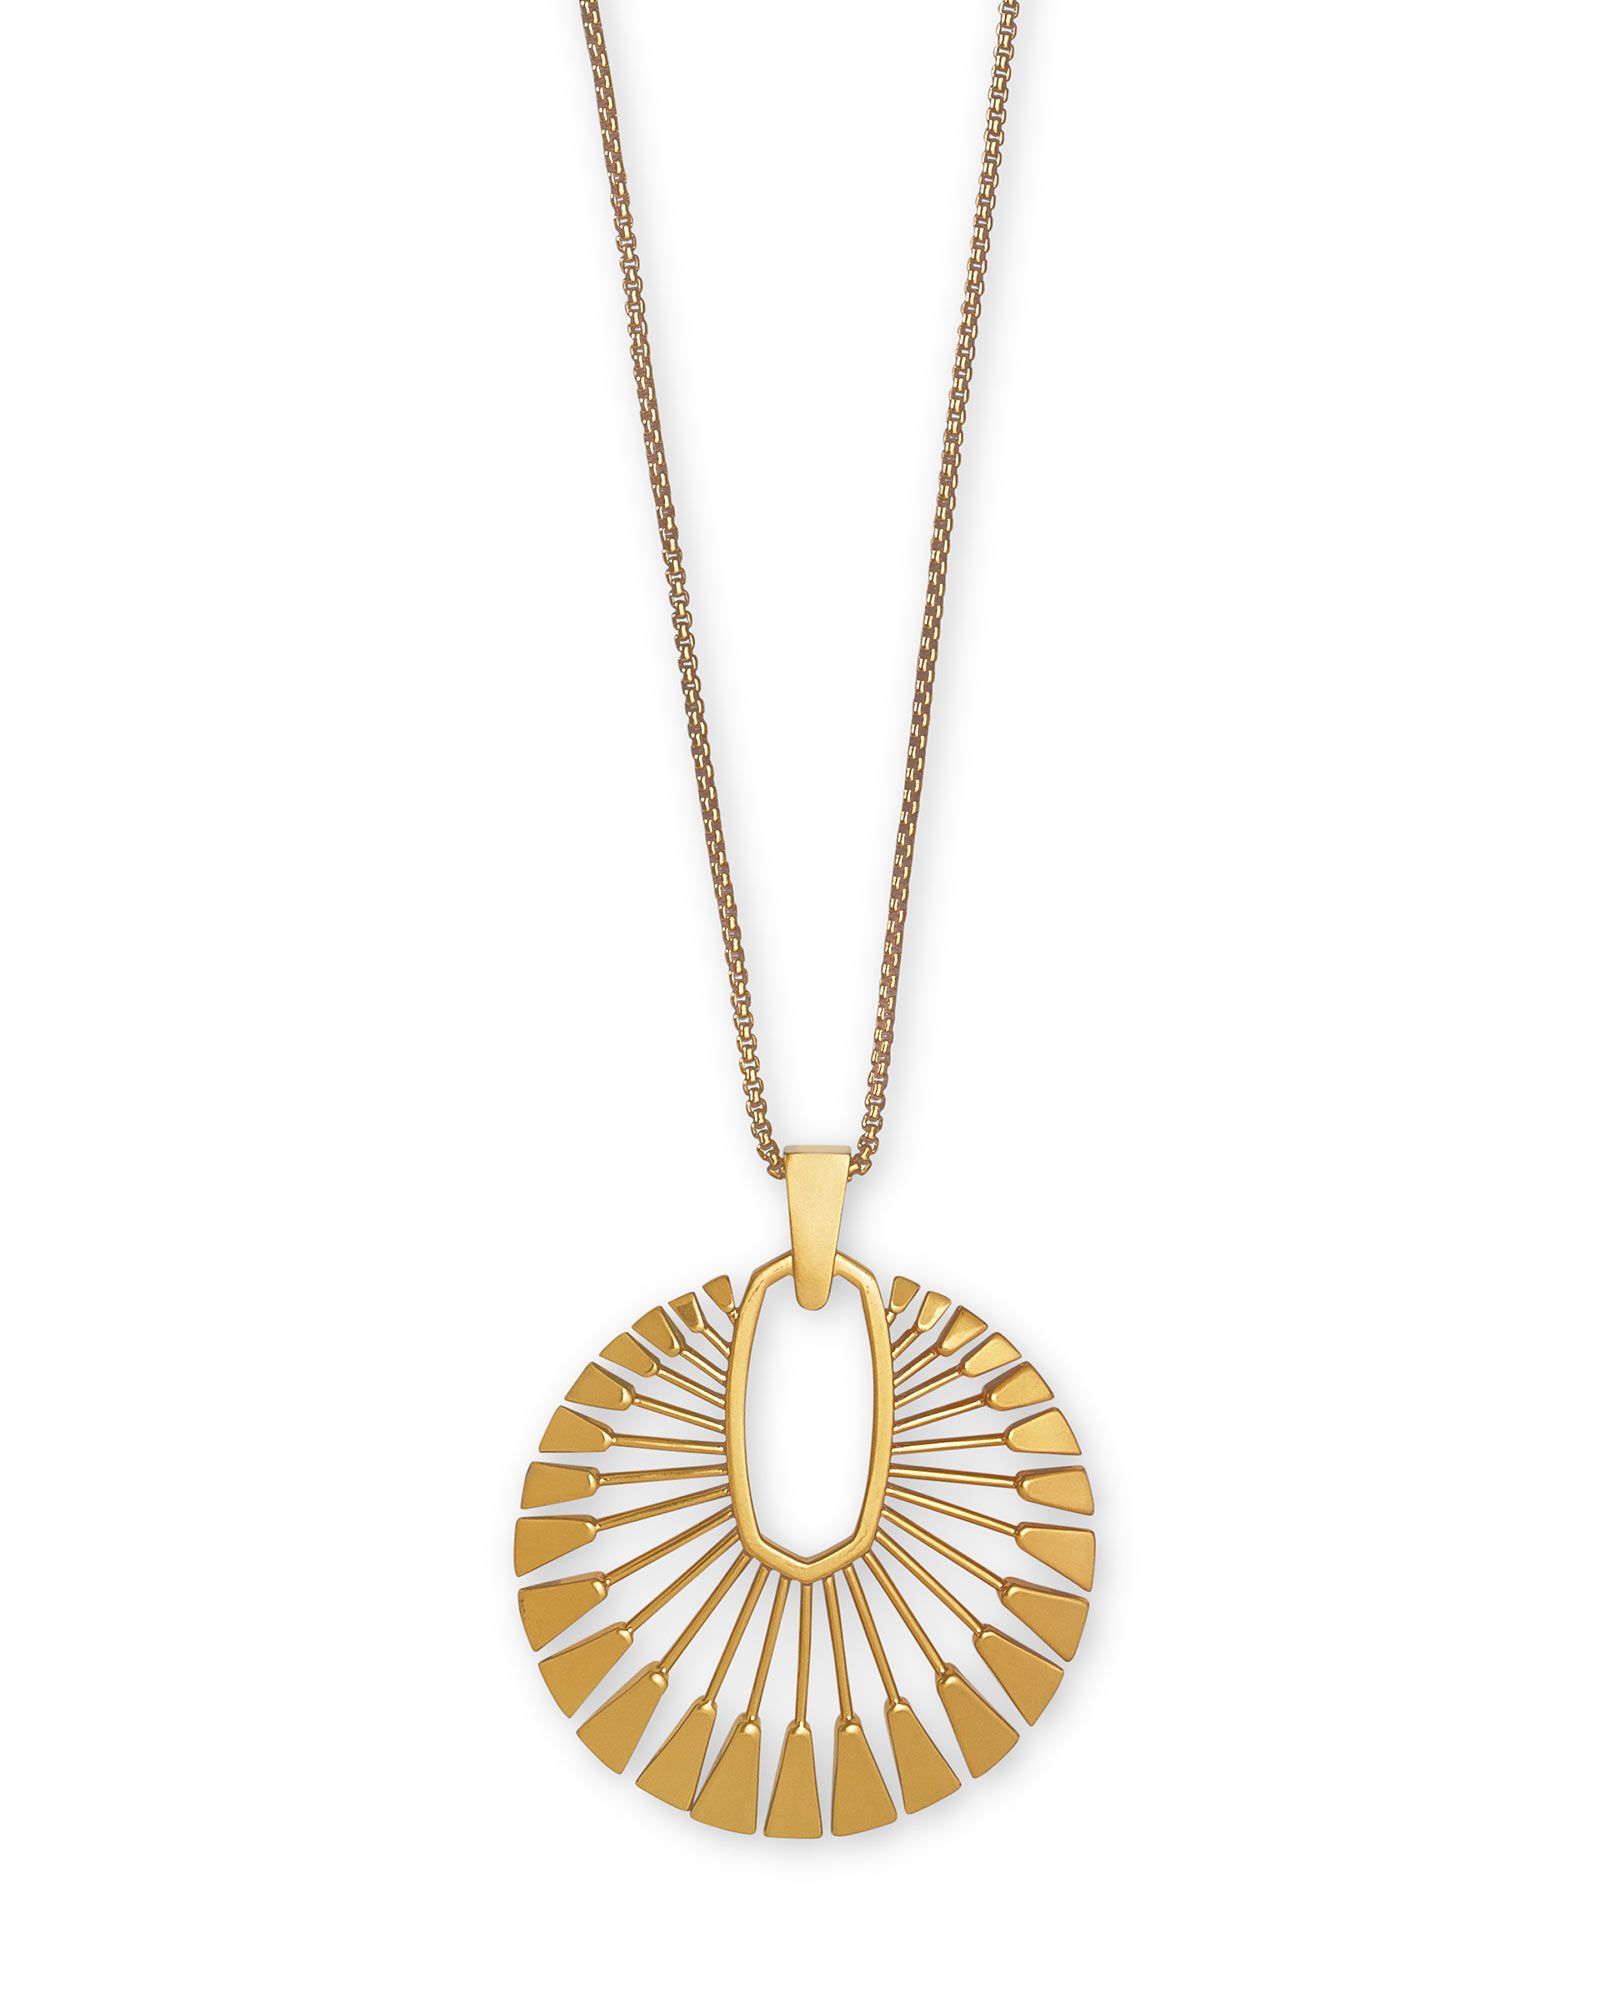 Deanne Long Pendant Necklace in Vintage Gold | Kendra Scott | Kendra Scott